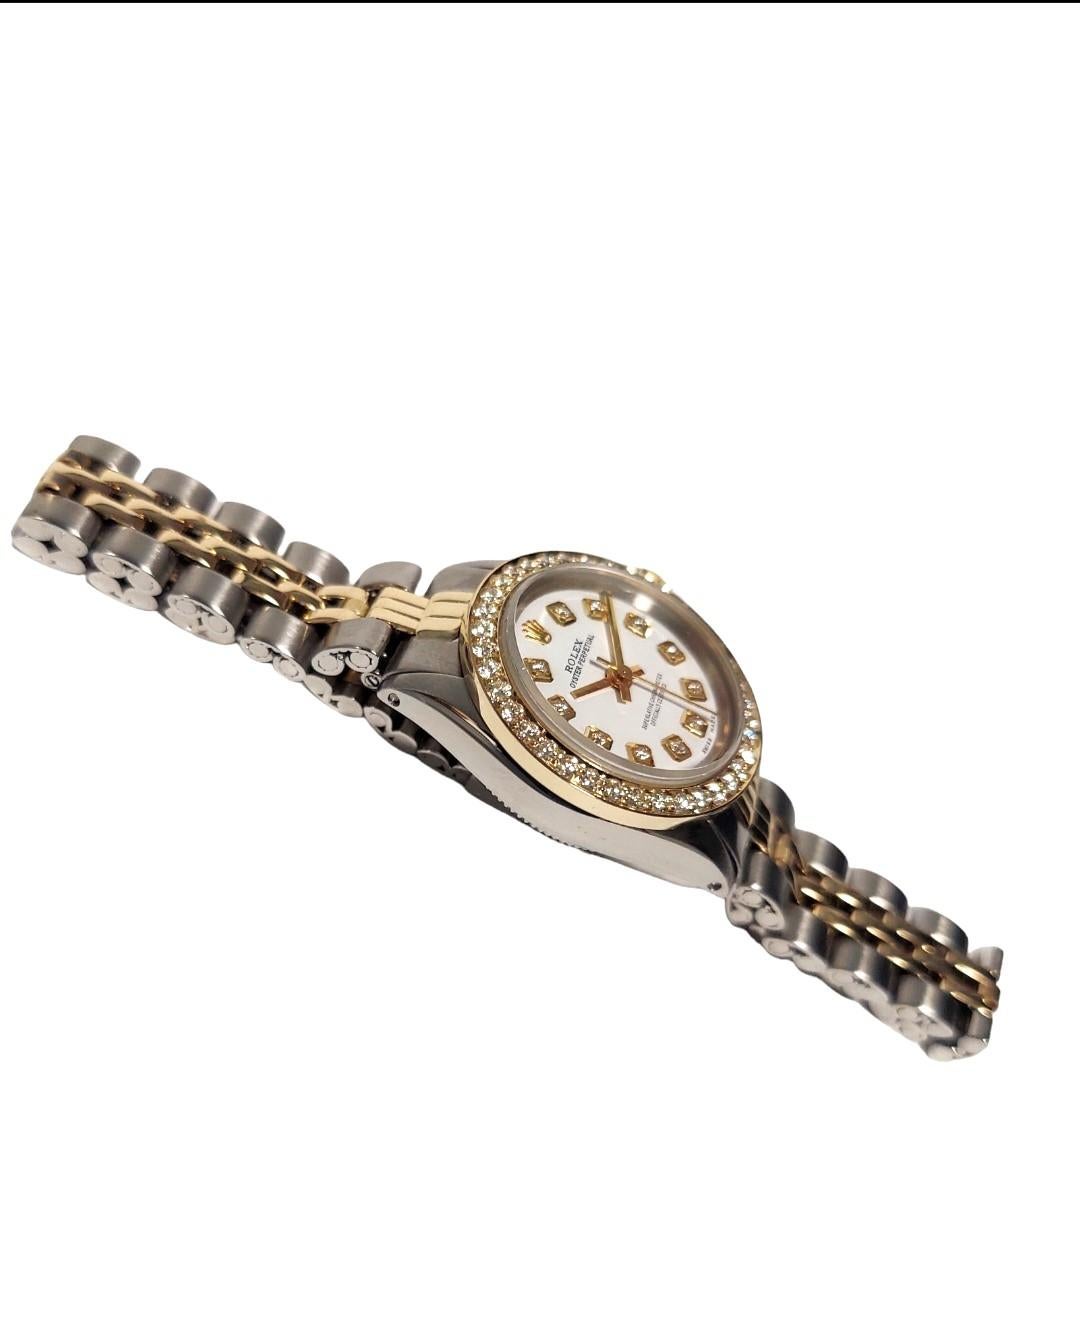 Marke - Rolex 
Stil - ewige Auster 
Geschlecht - Damen 
Gehäusegröße - 25 mm
Modell - 6619
Metalle - rostfreier Stahl / Gelbgold
Zifferblatt - benutzerdefinierte White Diamond 
Lünette - Benutzerdefinierte Gelbgold Diamant 
Uhrwerk- Rolex Automatik